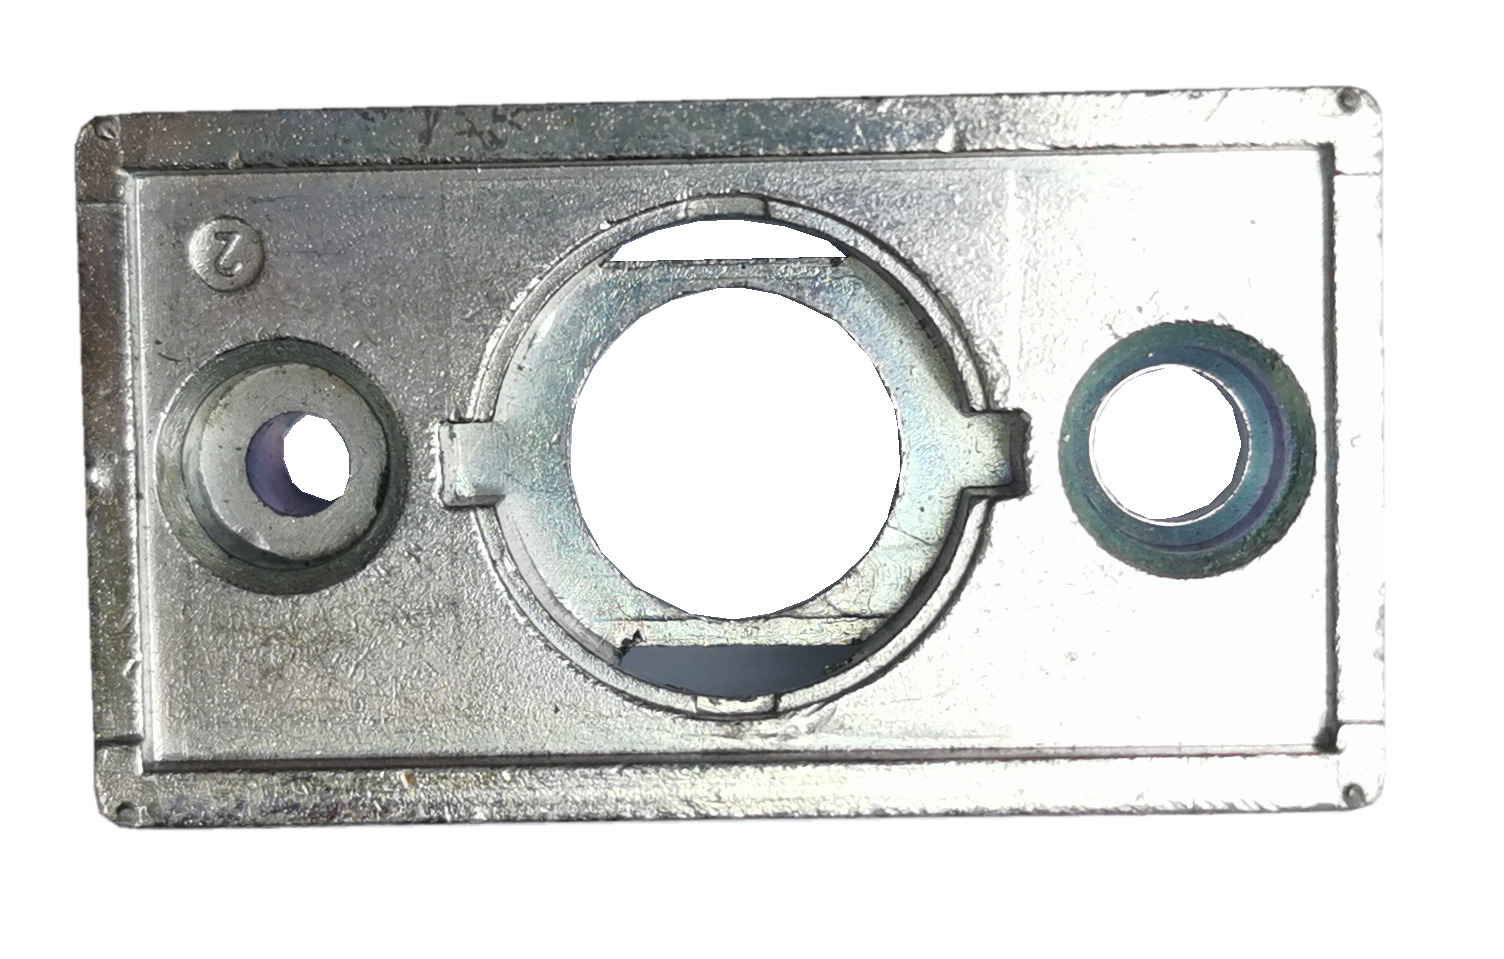 Zinc automatic door lock, sliding window switch strip lock, zinc alloy die-casting accessories, door and window hardware accessories, mechanical door hook lock